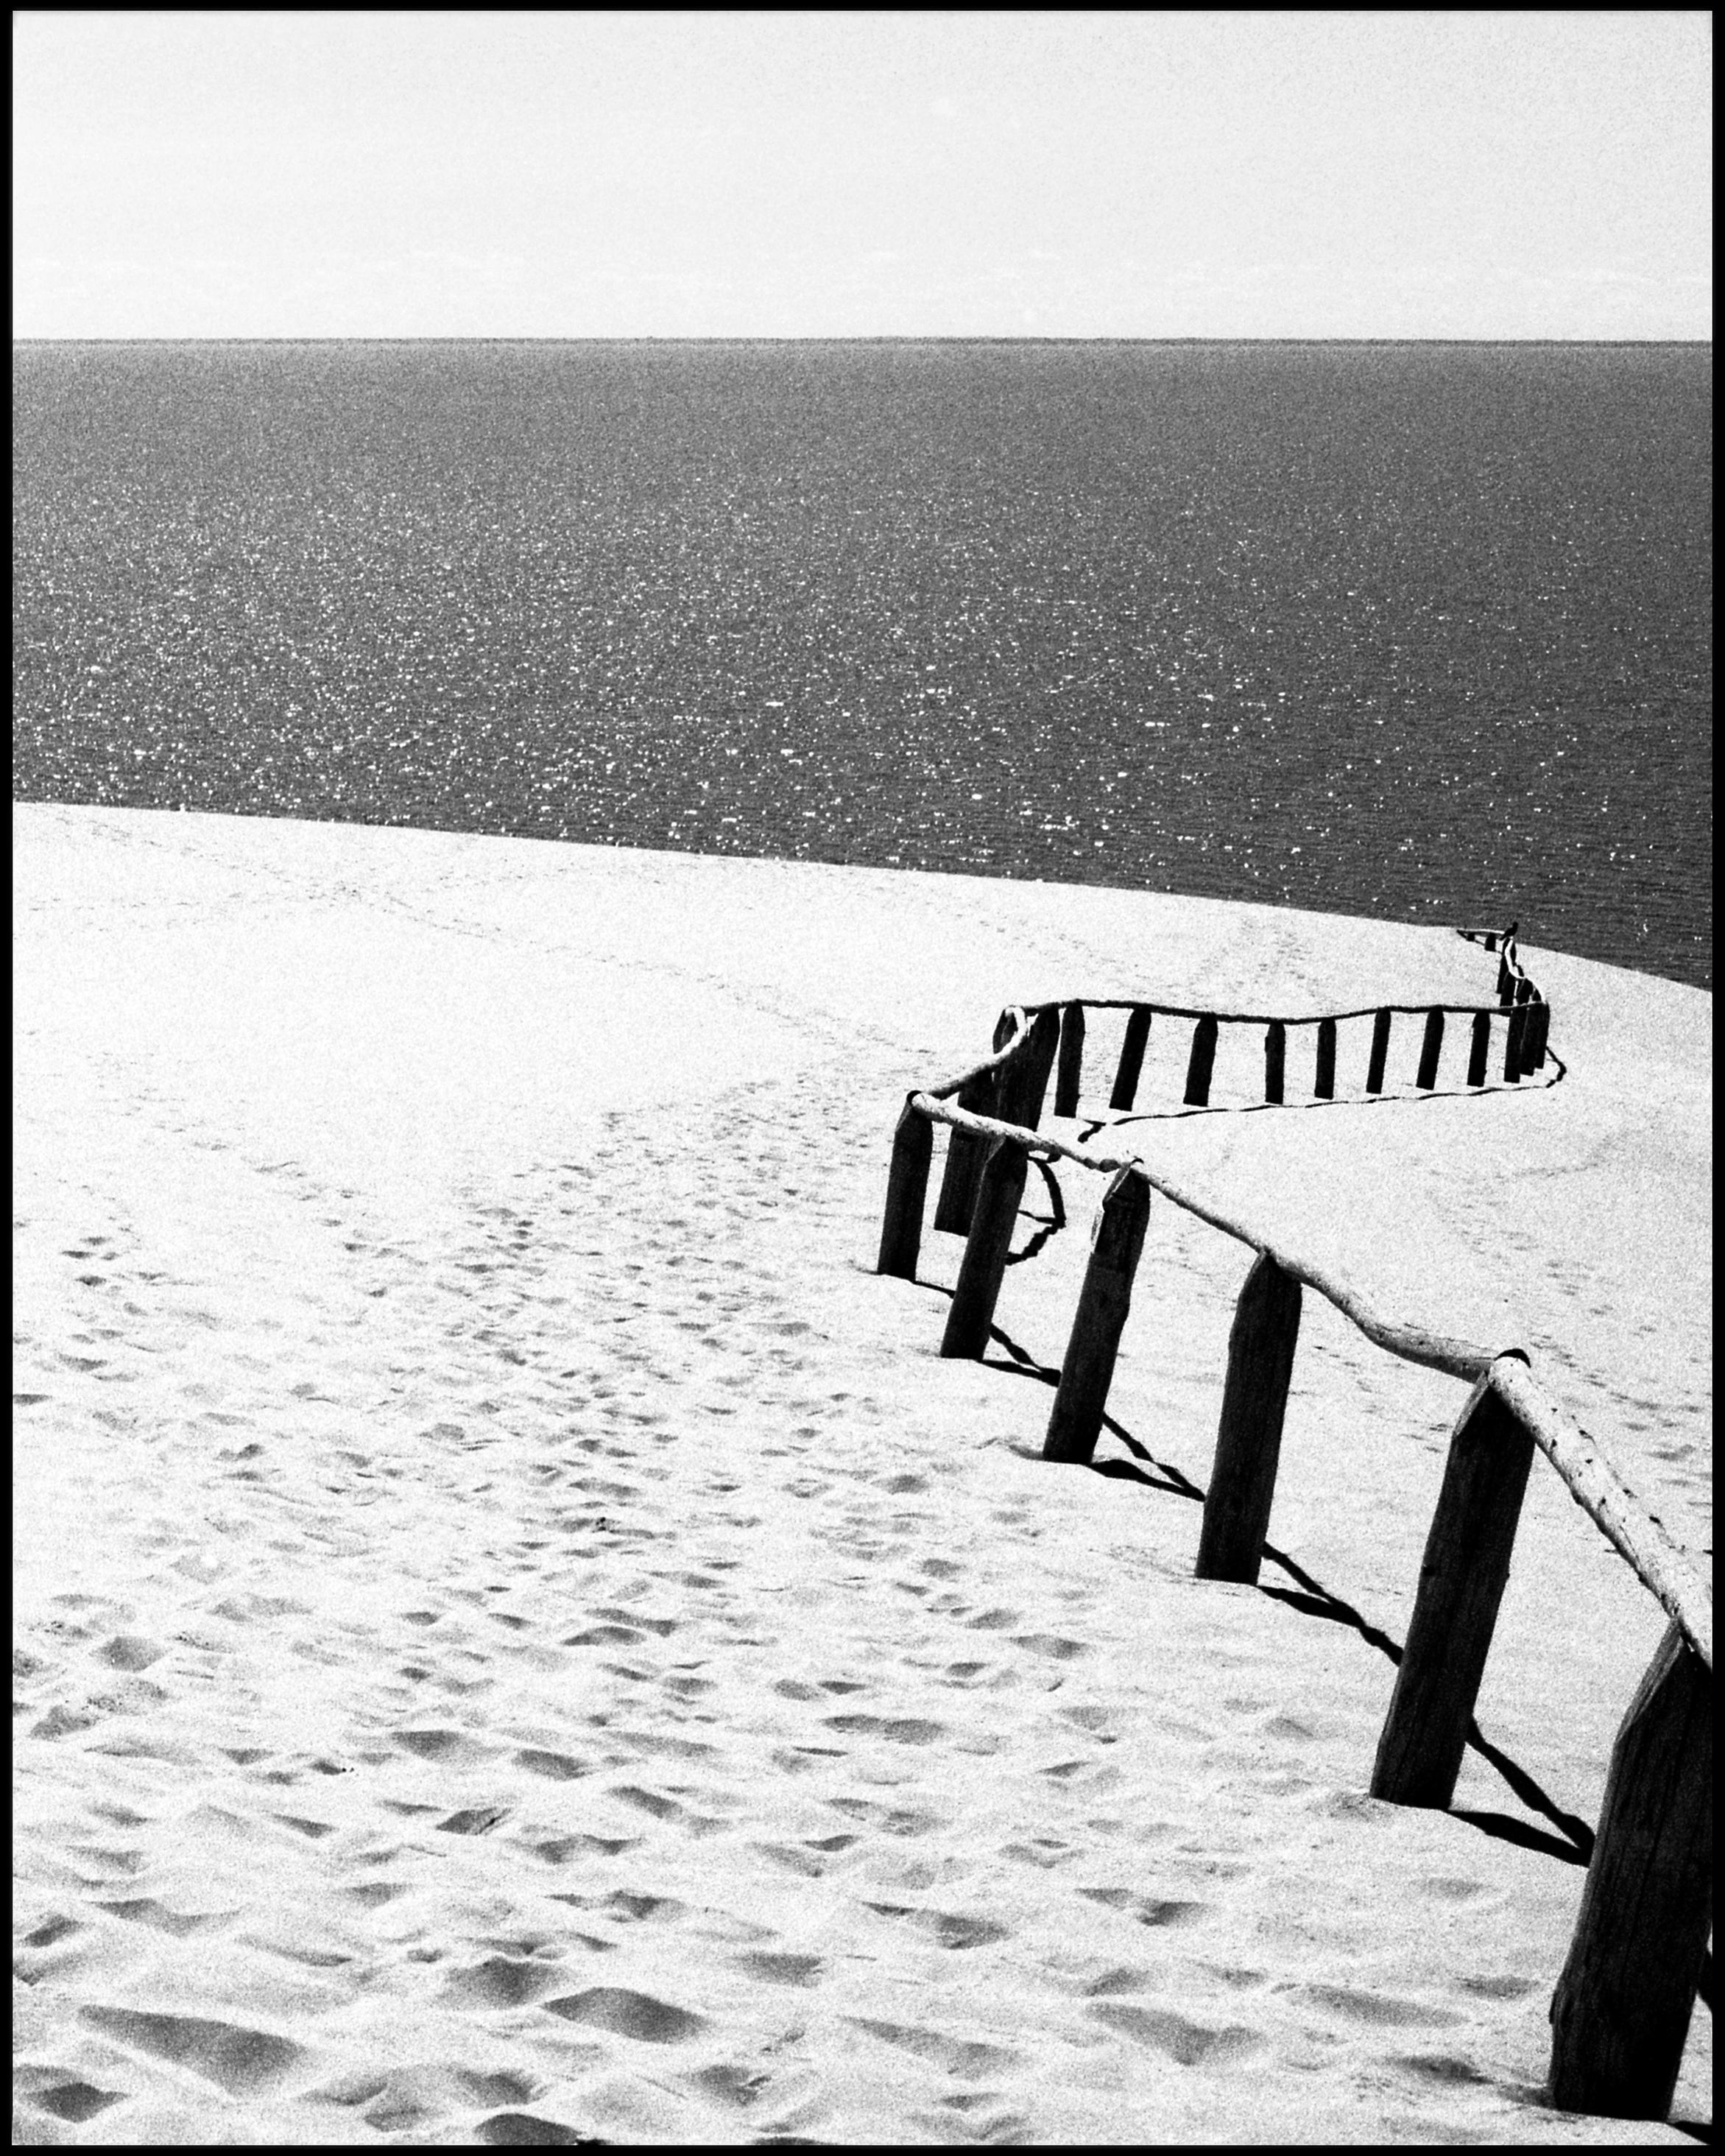 Black and White Photograph Ugne Pouwell - Nida - Photographie analogique en noir et blanc de dunes de sable et de la mer Baltique